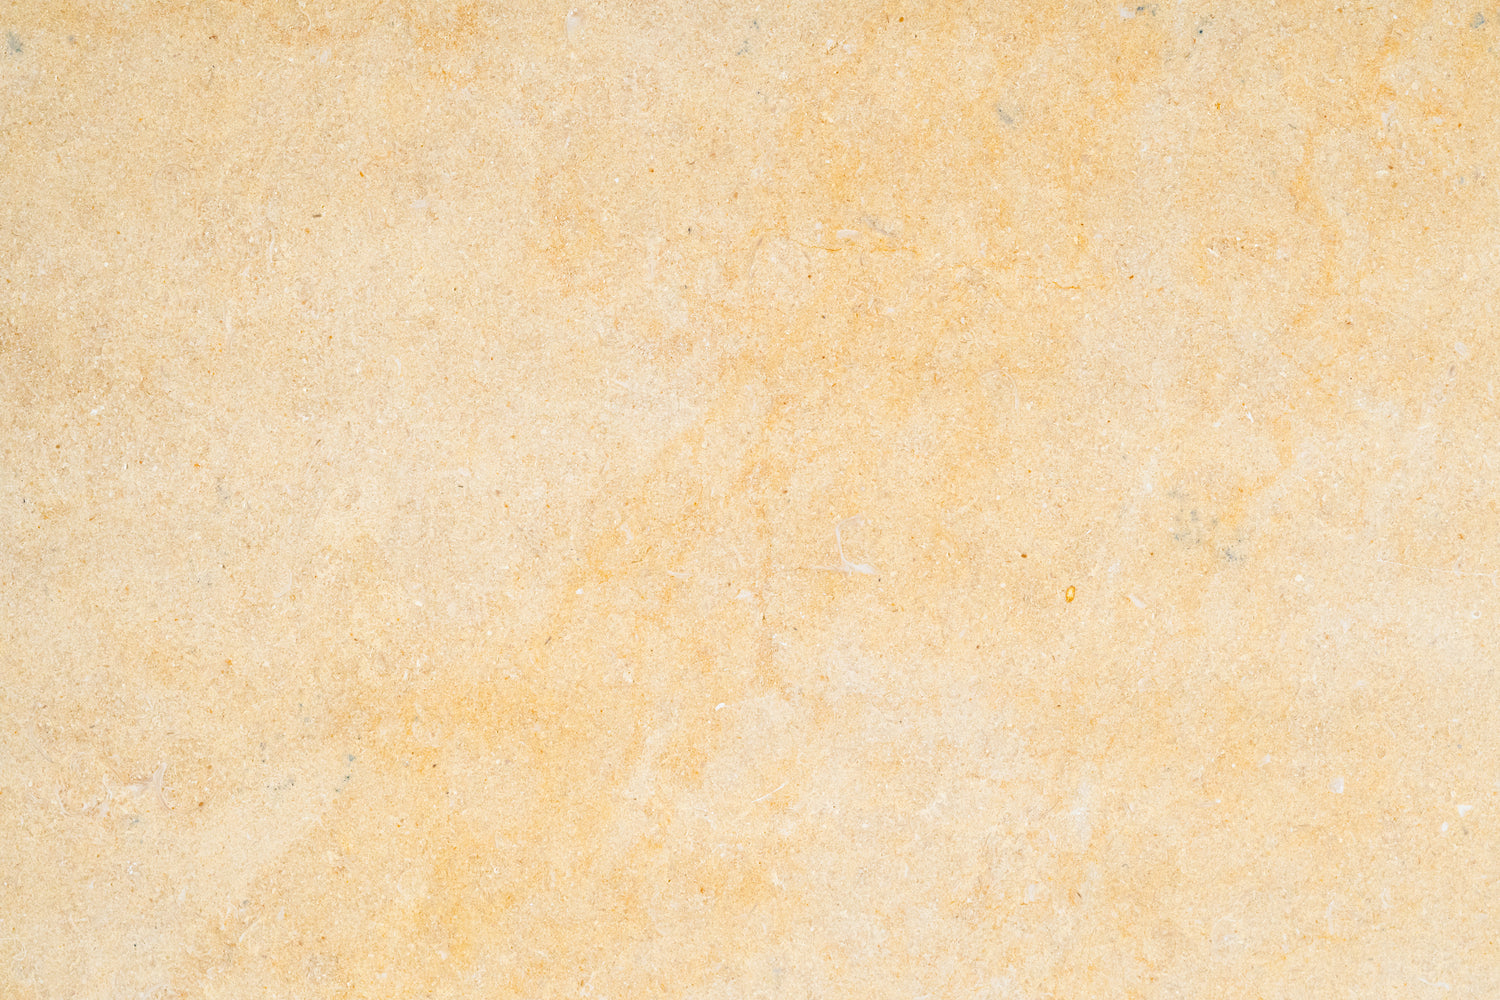 Full Tile Sample - Antique Gold Limestone Tile - 24" x 24" x 5/8" Honed